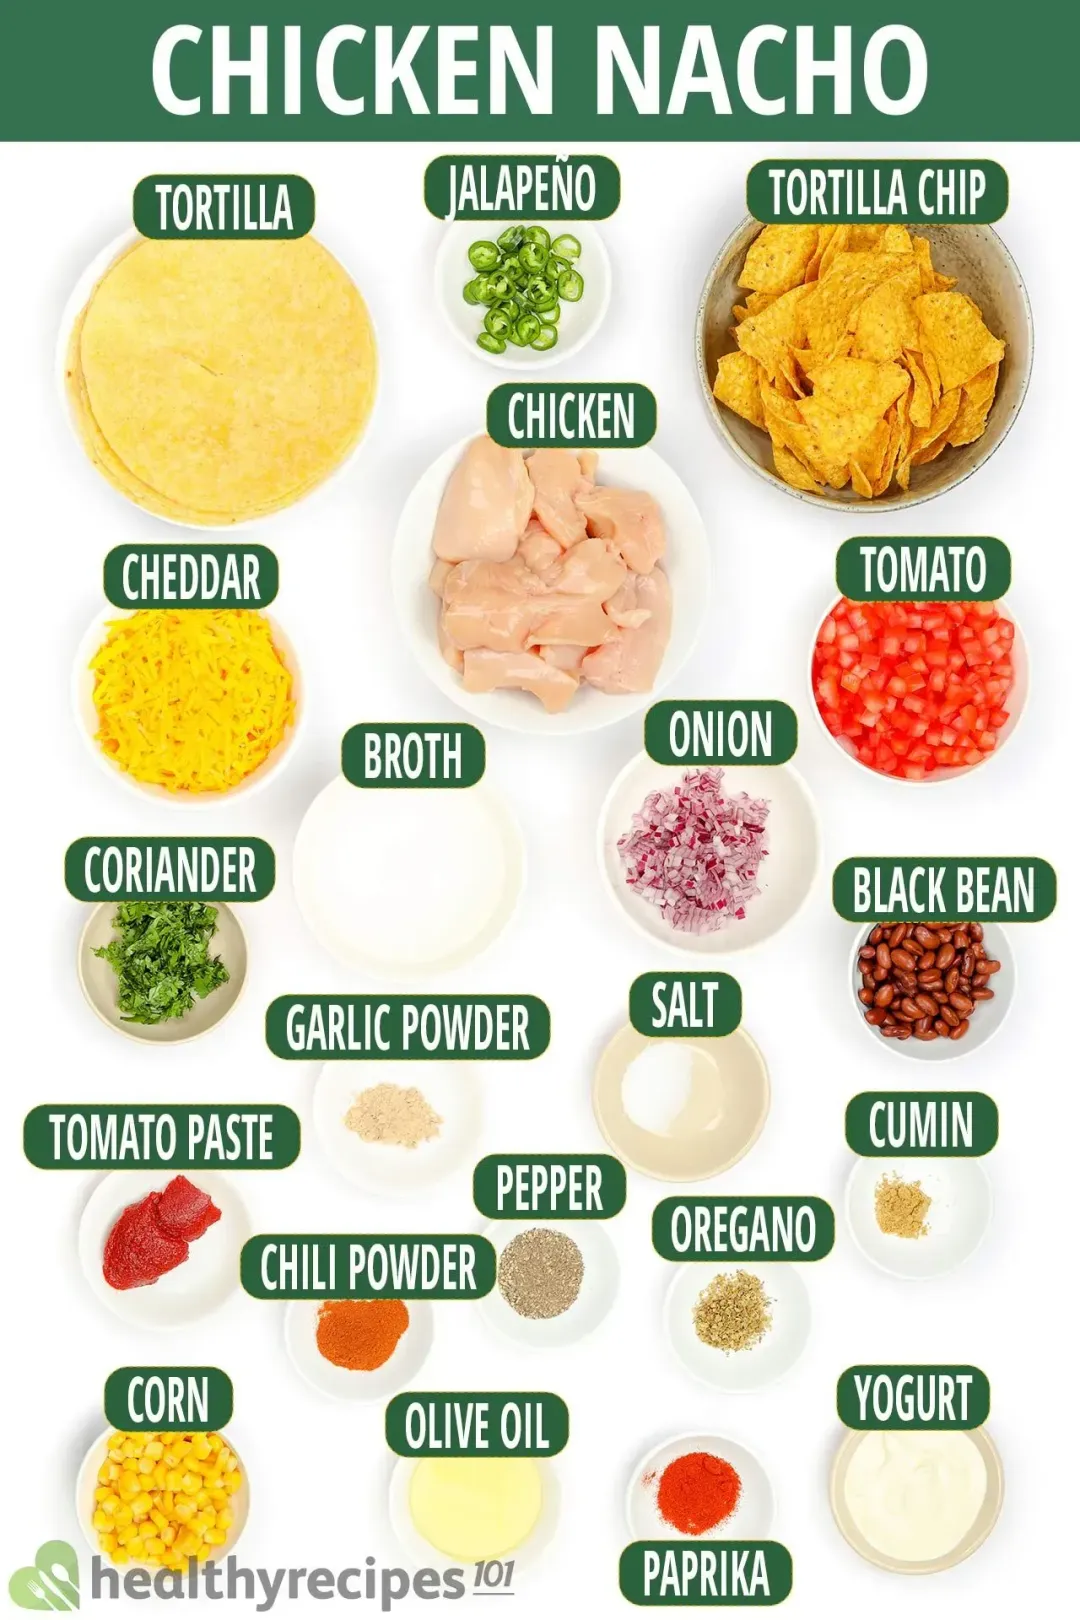 Ingredients for Chicken Nacho